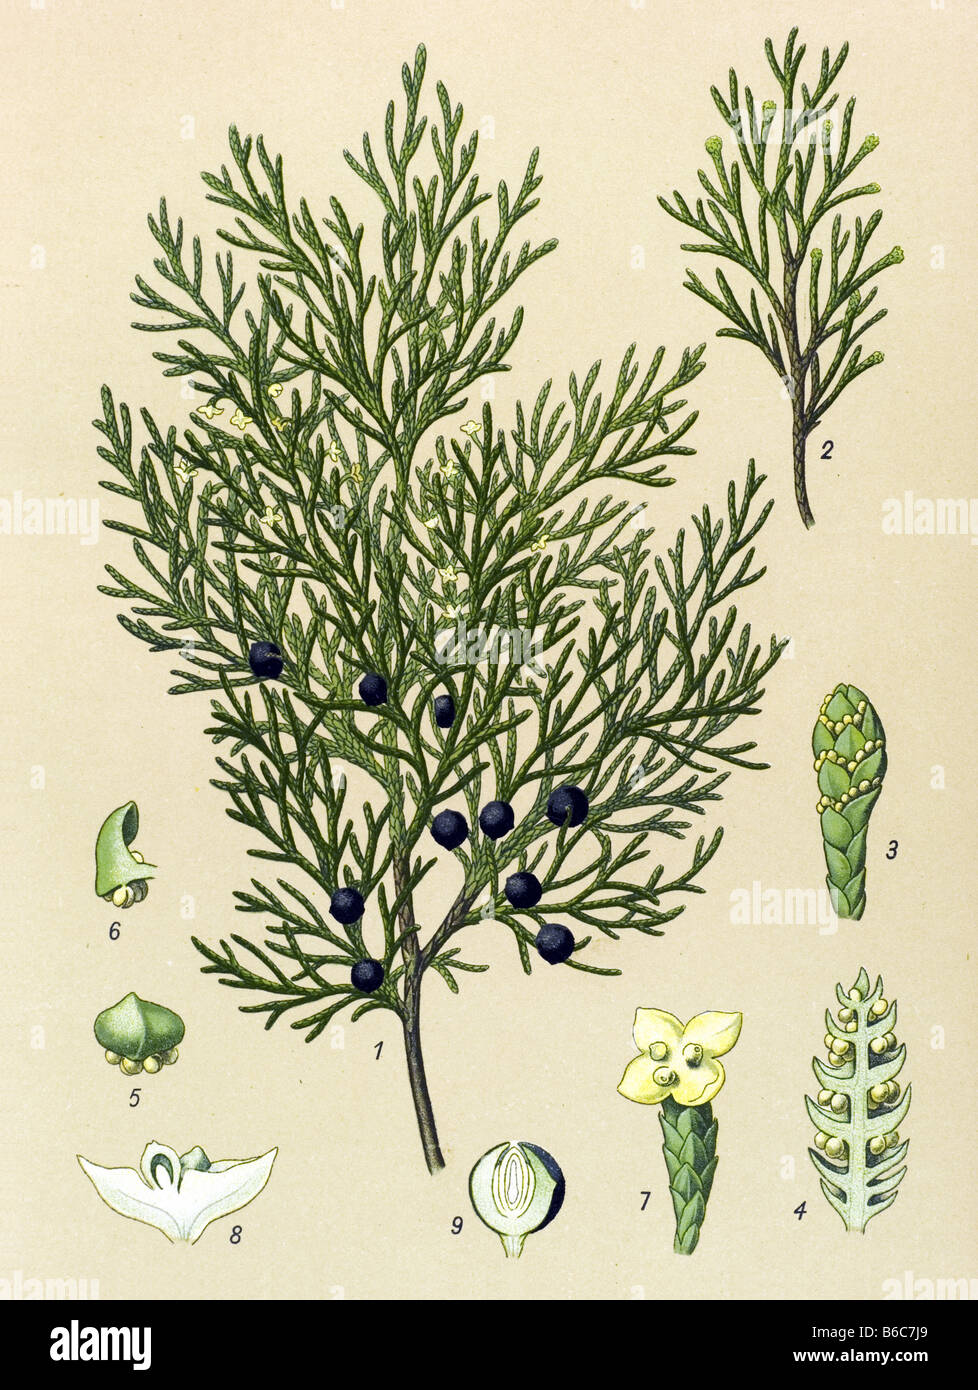 Savin, Juniperus sabina, poisonous plants illustrations Stock Photo